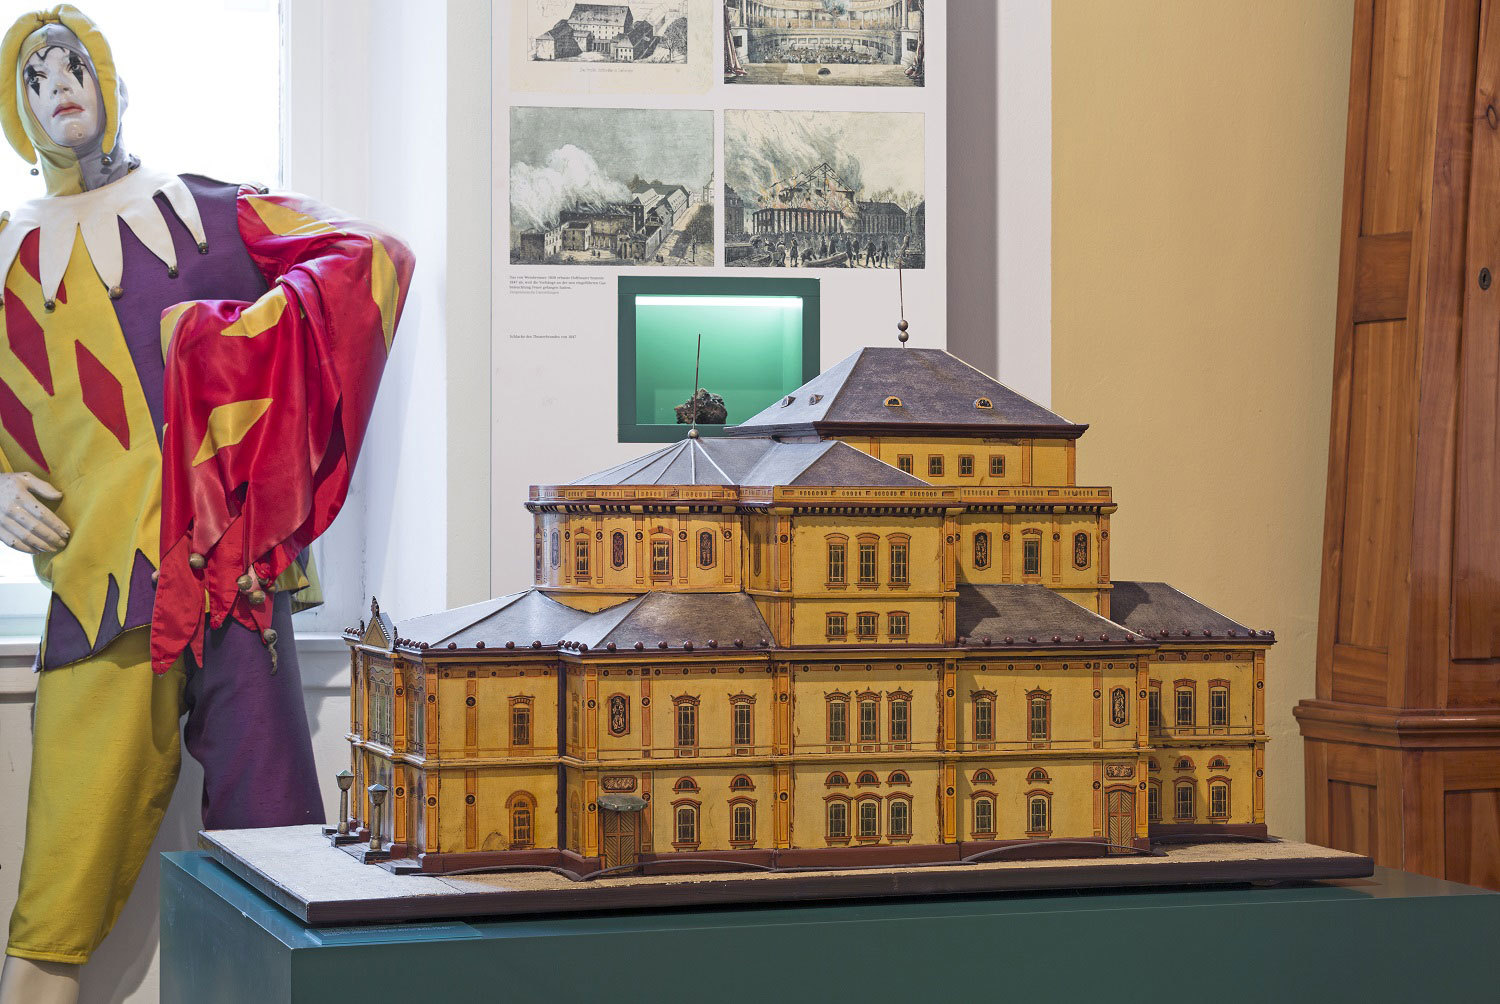 Modell des Hoftehaters im Stadtmuseum Karlsruhe.jpg